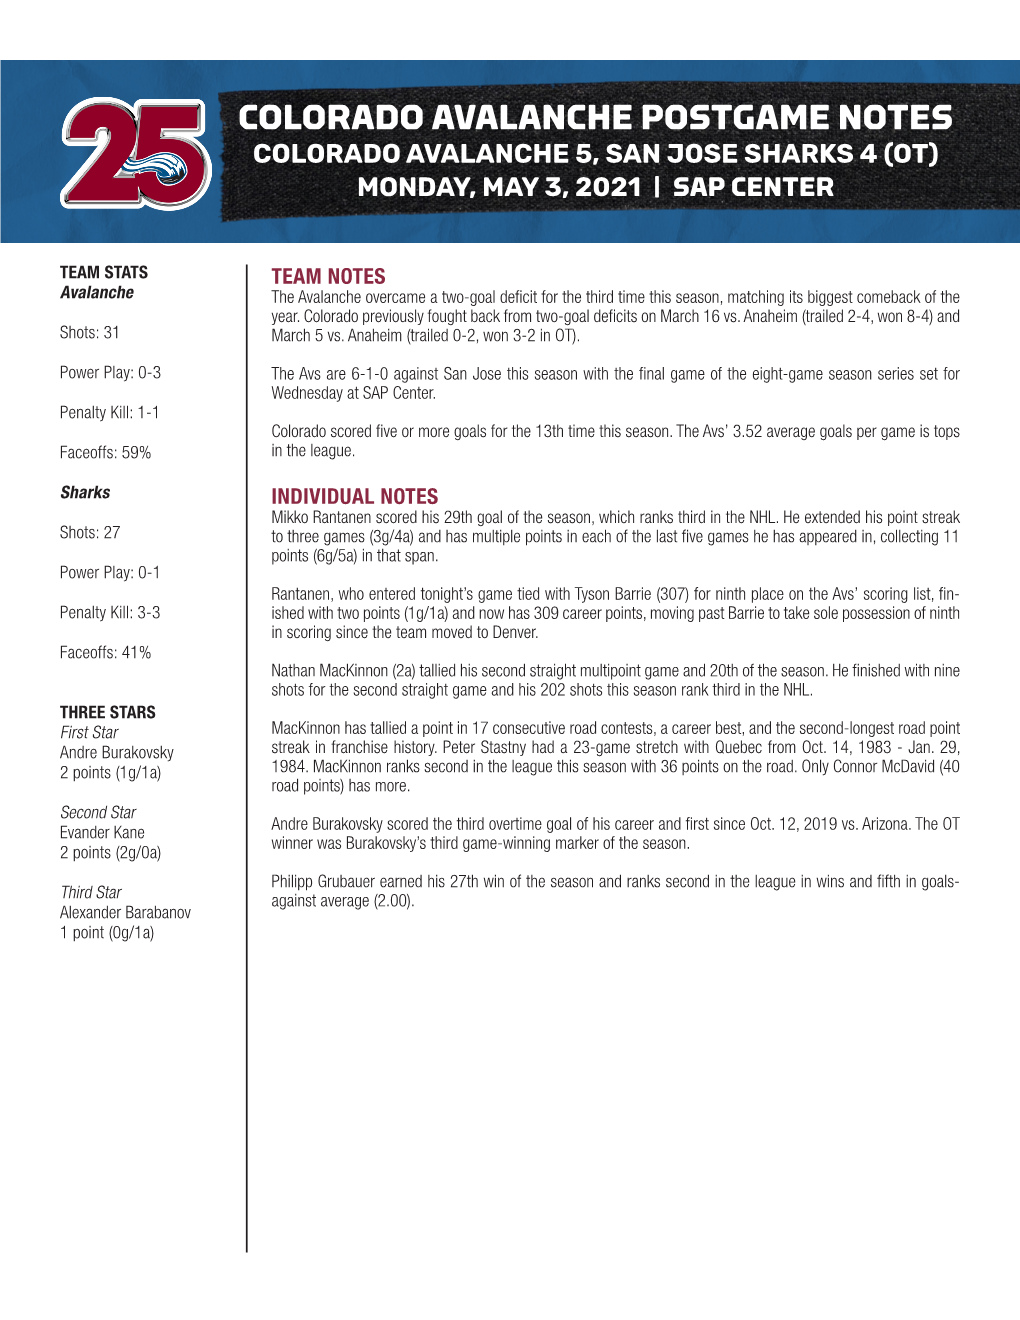 Colorado Avalanche Postgame Notes Colorado Avalanche 5, San Jose Sharks 4 (Ot) Monday, May 3, 2021 | Sap Center